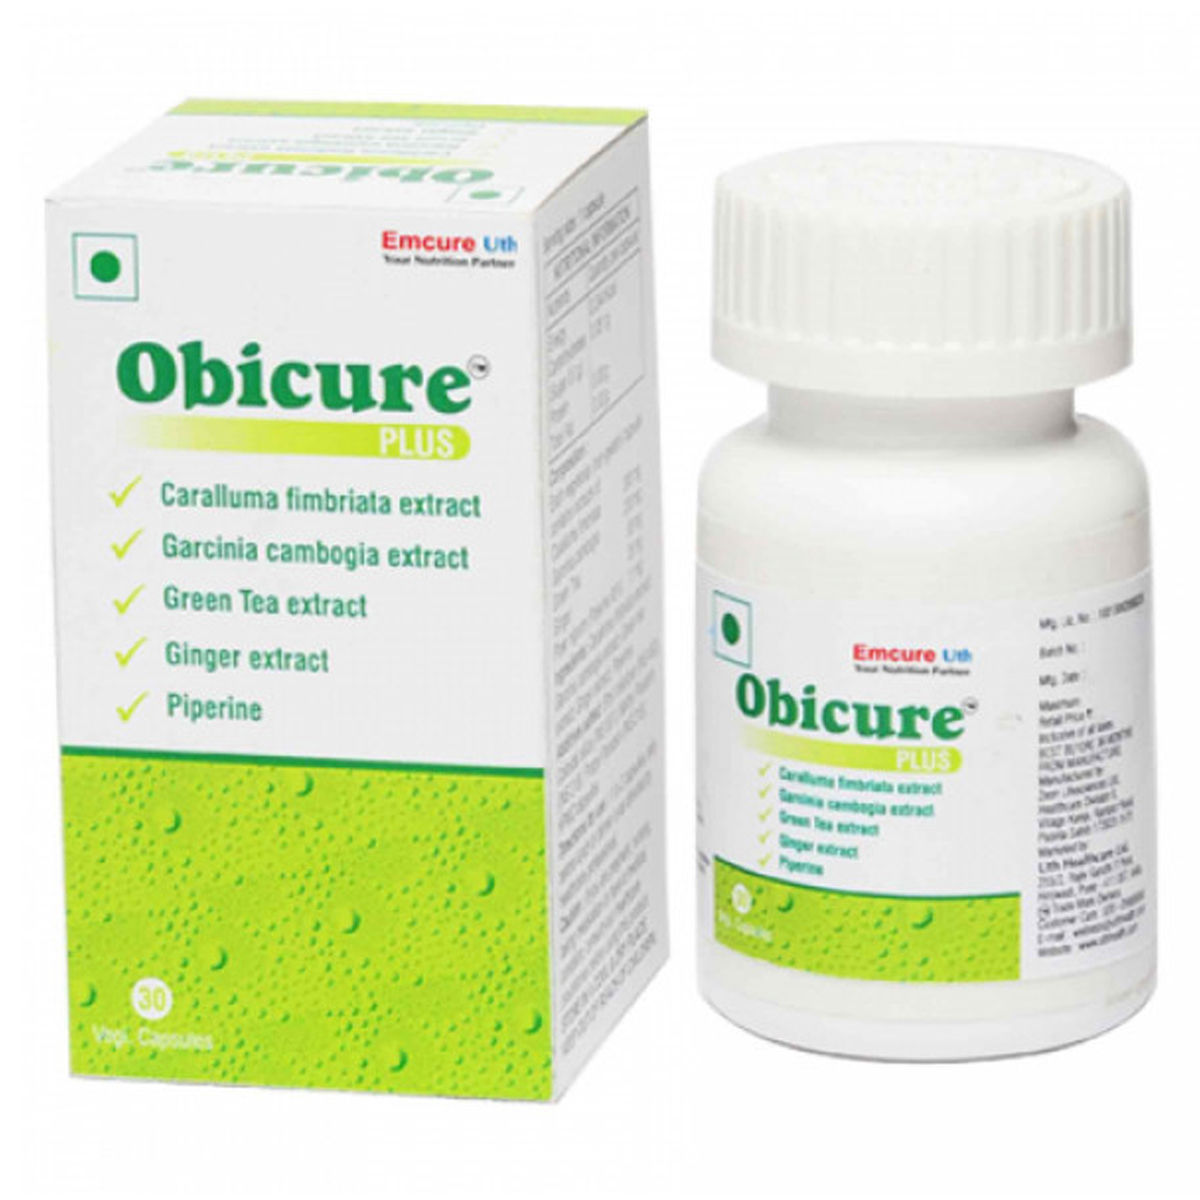 Buy Obicure Plus, 30 Capsules Online